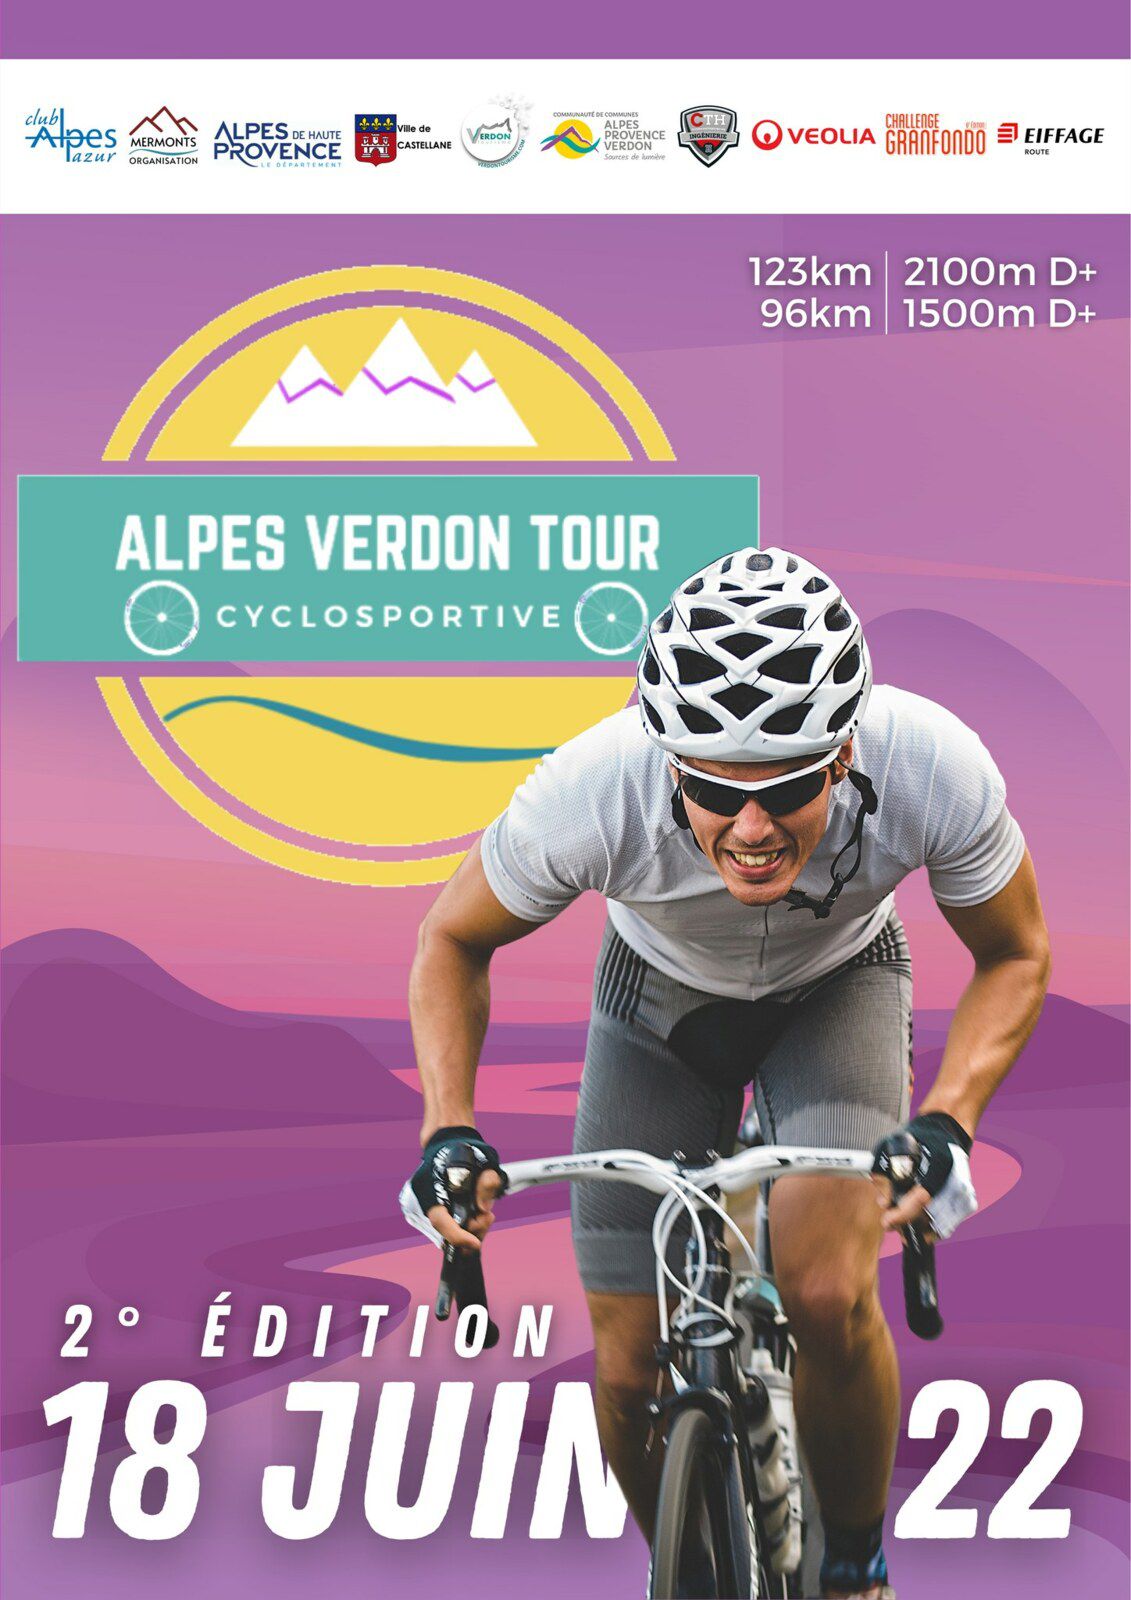 Alpes Verdon Tour